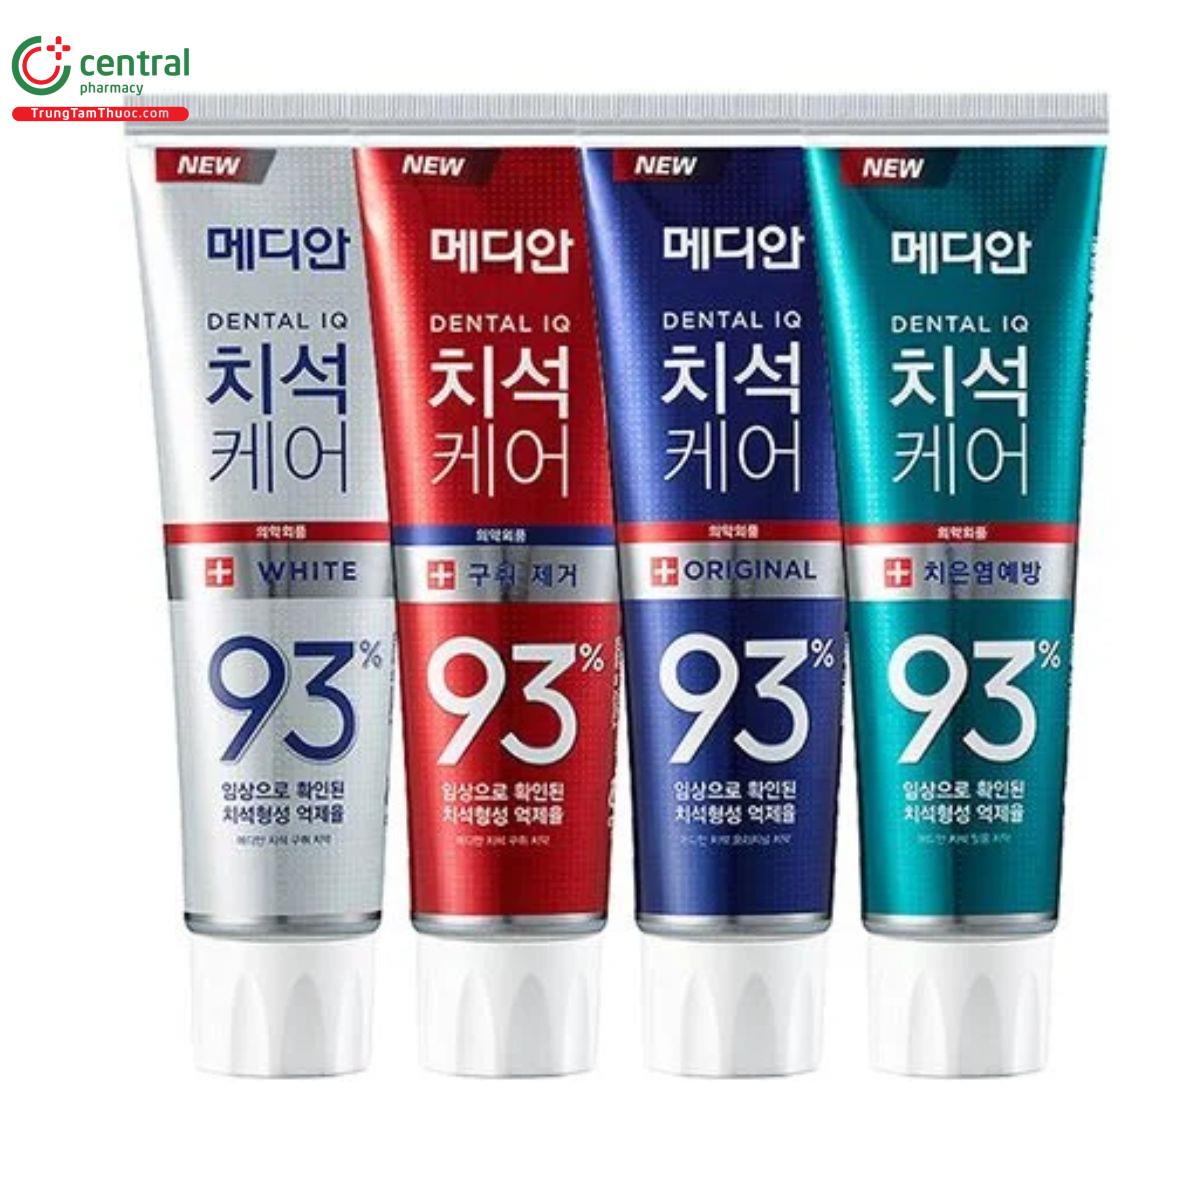 Kem đánh răng Median 93% Hàn Quốc